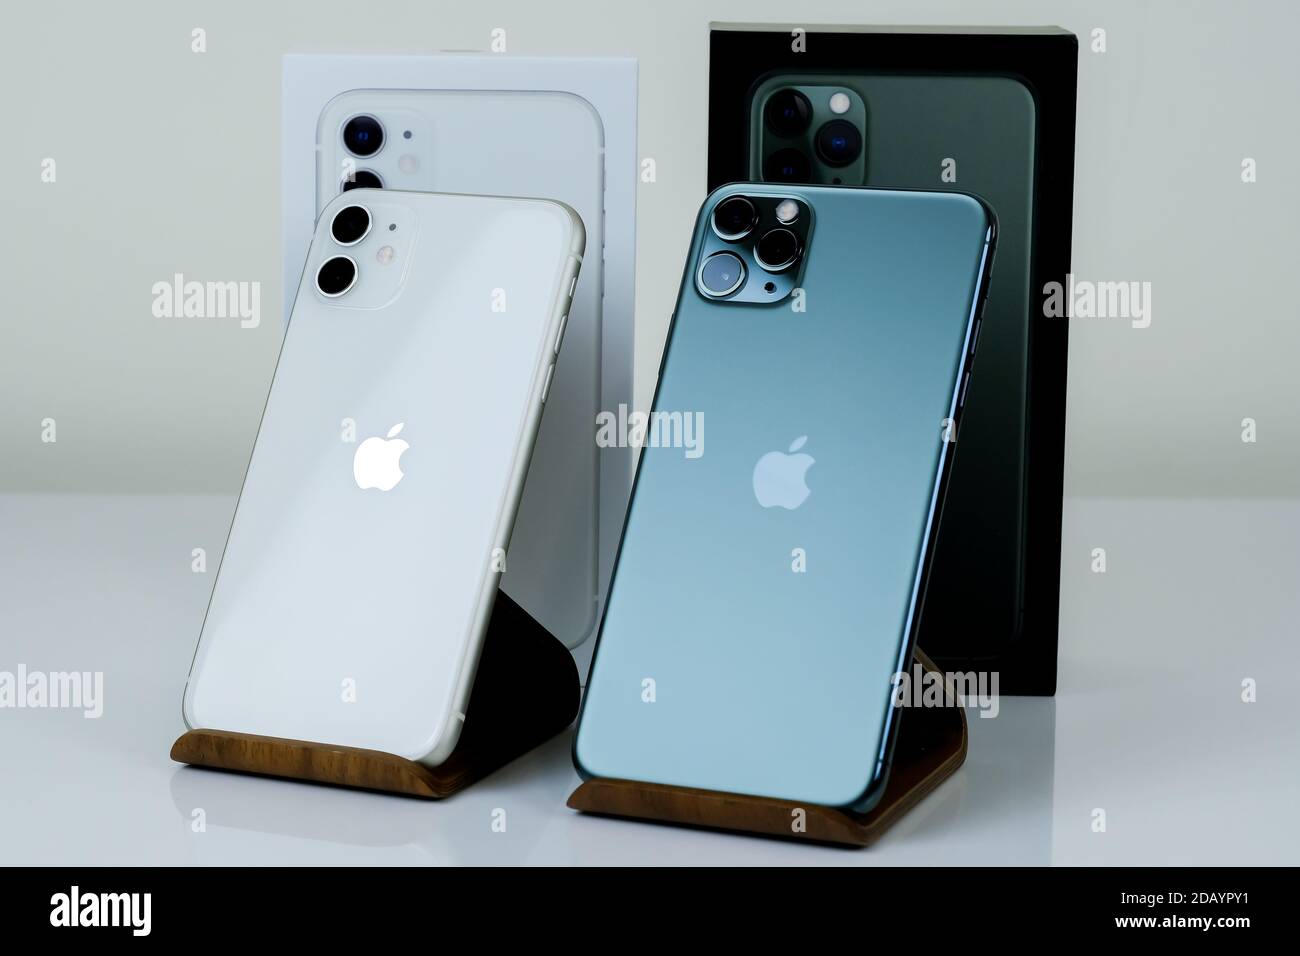 IPhone 11 Pro Max en vert minuit à côté de l'iPhone 11 en blanc Photo Stock  - Alamy